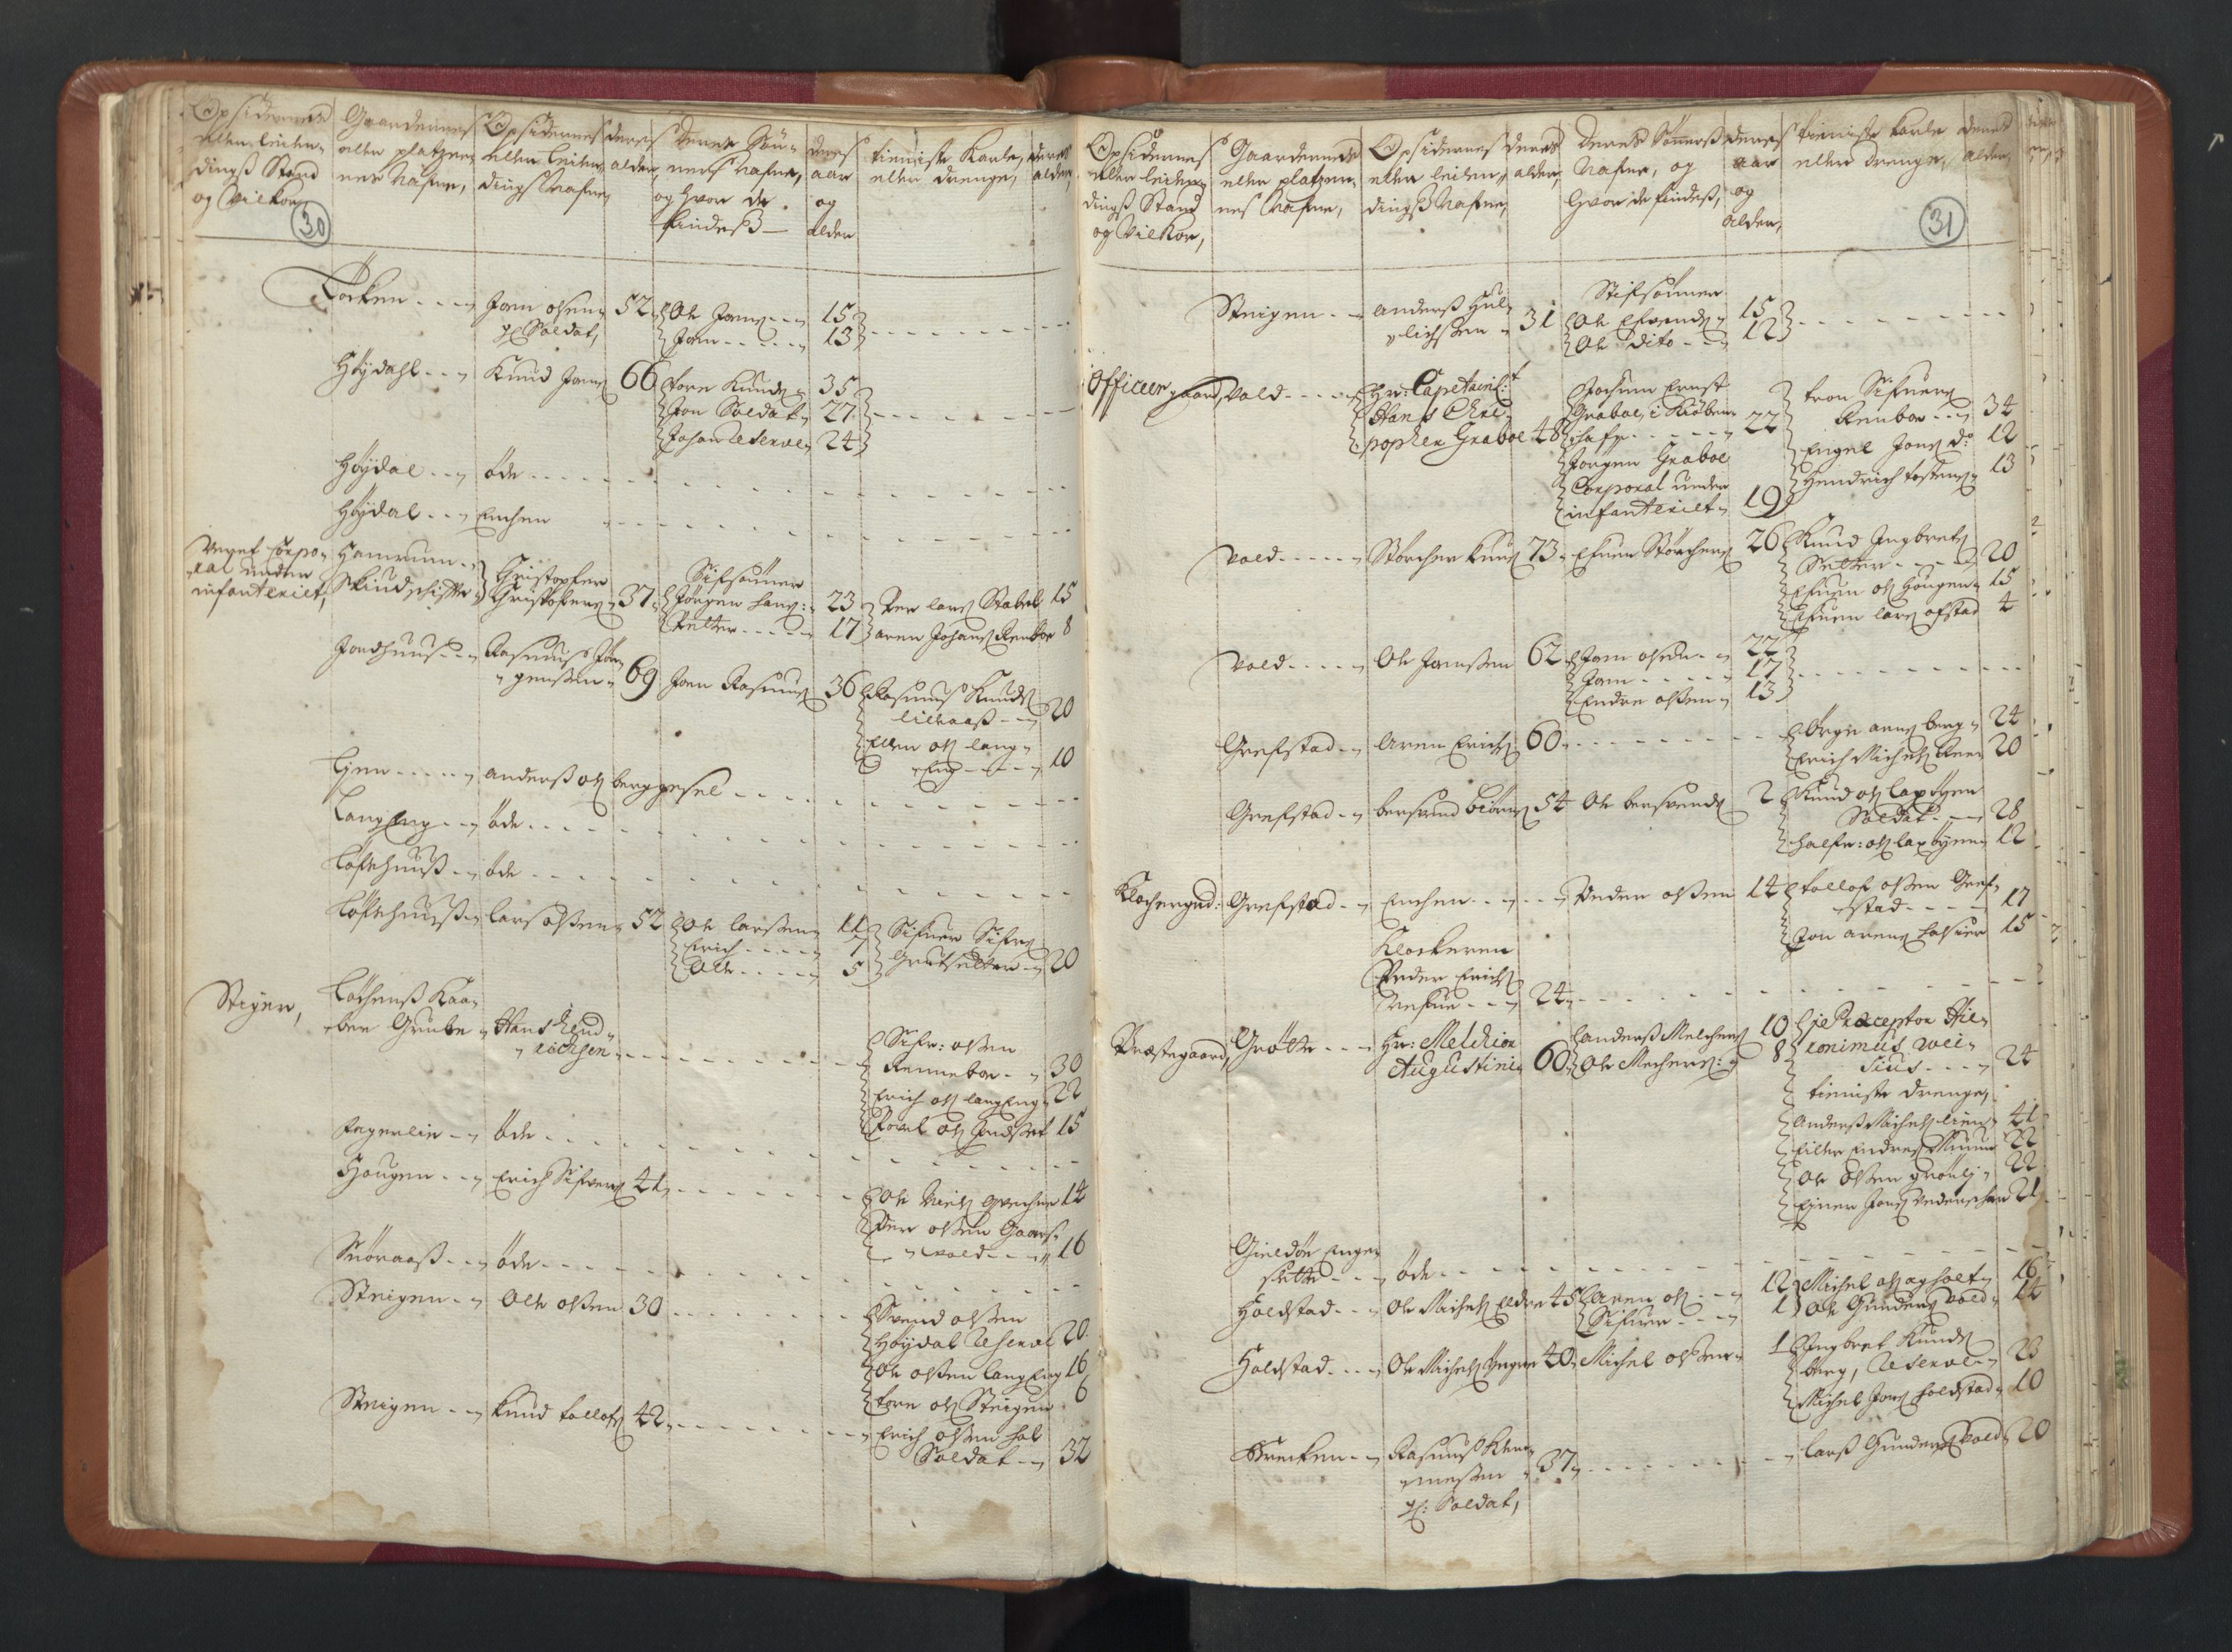 RA, Manntallet 1701, nr. 13: Orkdal fogderi og Gauldal fogderi med Røros kobberverk, 1701, s. 30-31